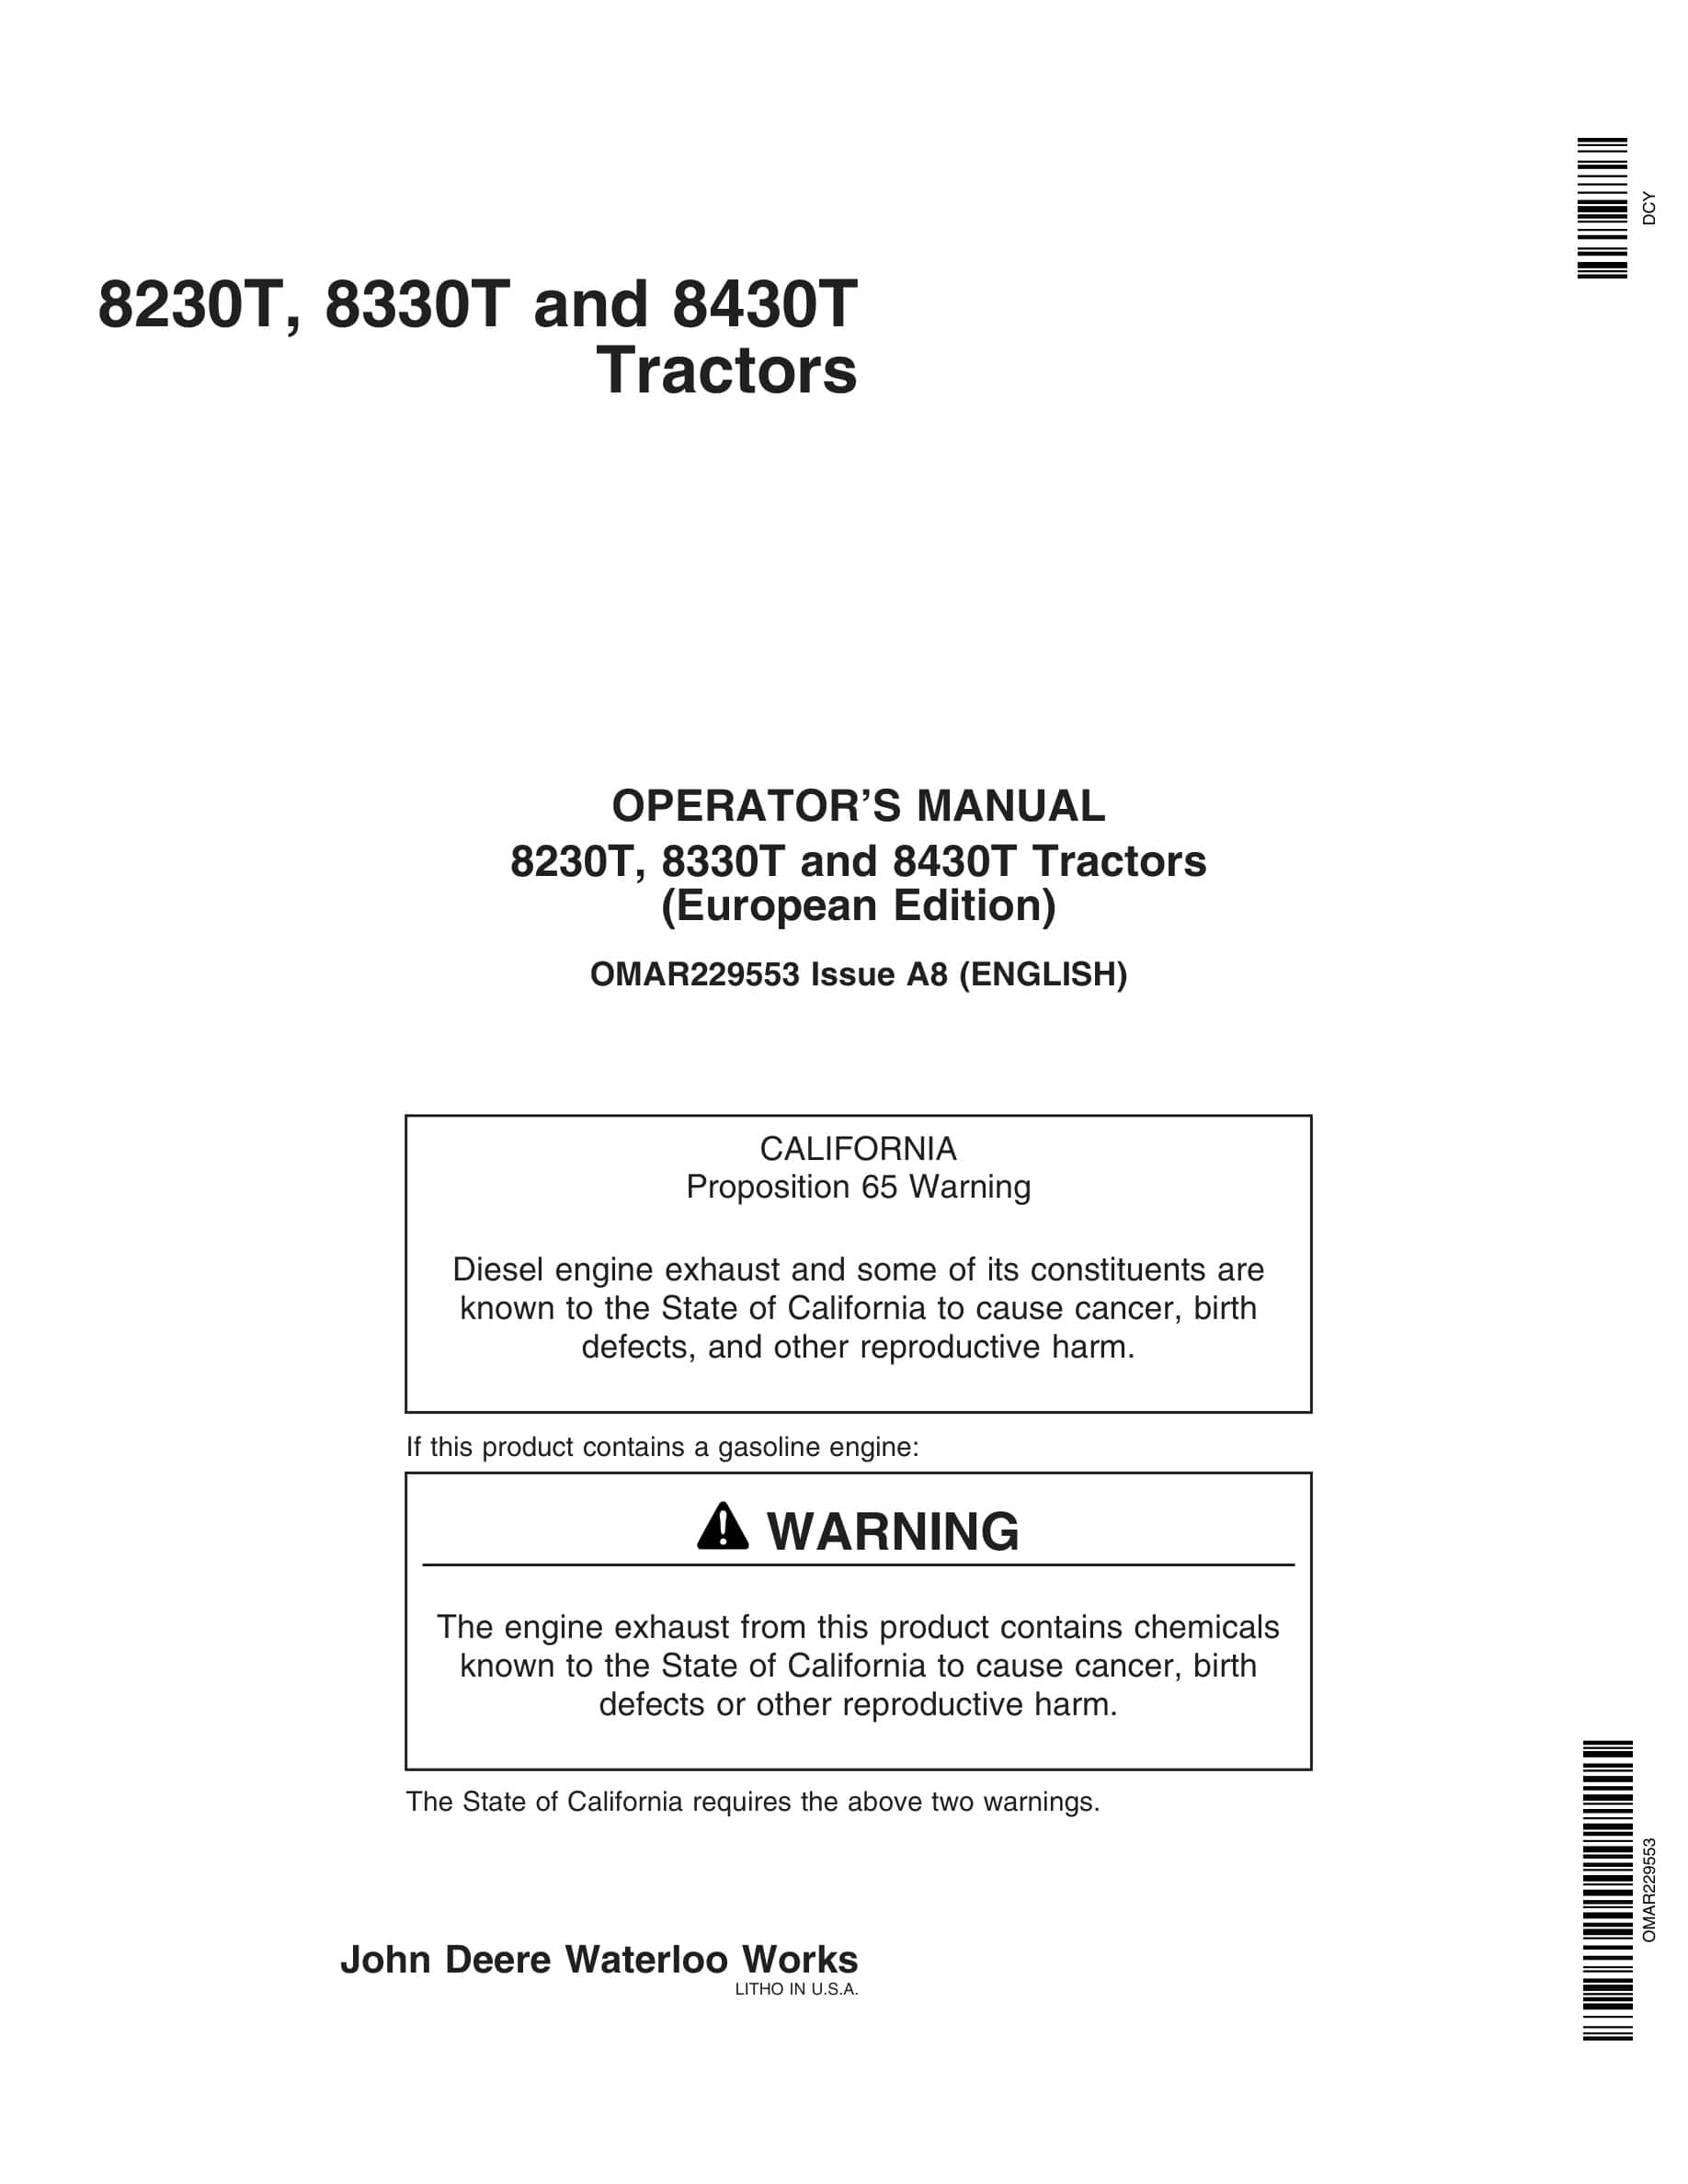 John Deere 8230t, 8330t And 8430t Tractors Operator Manuals OMAR229553-1